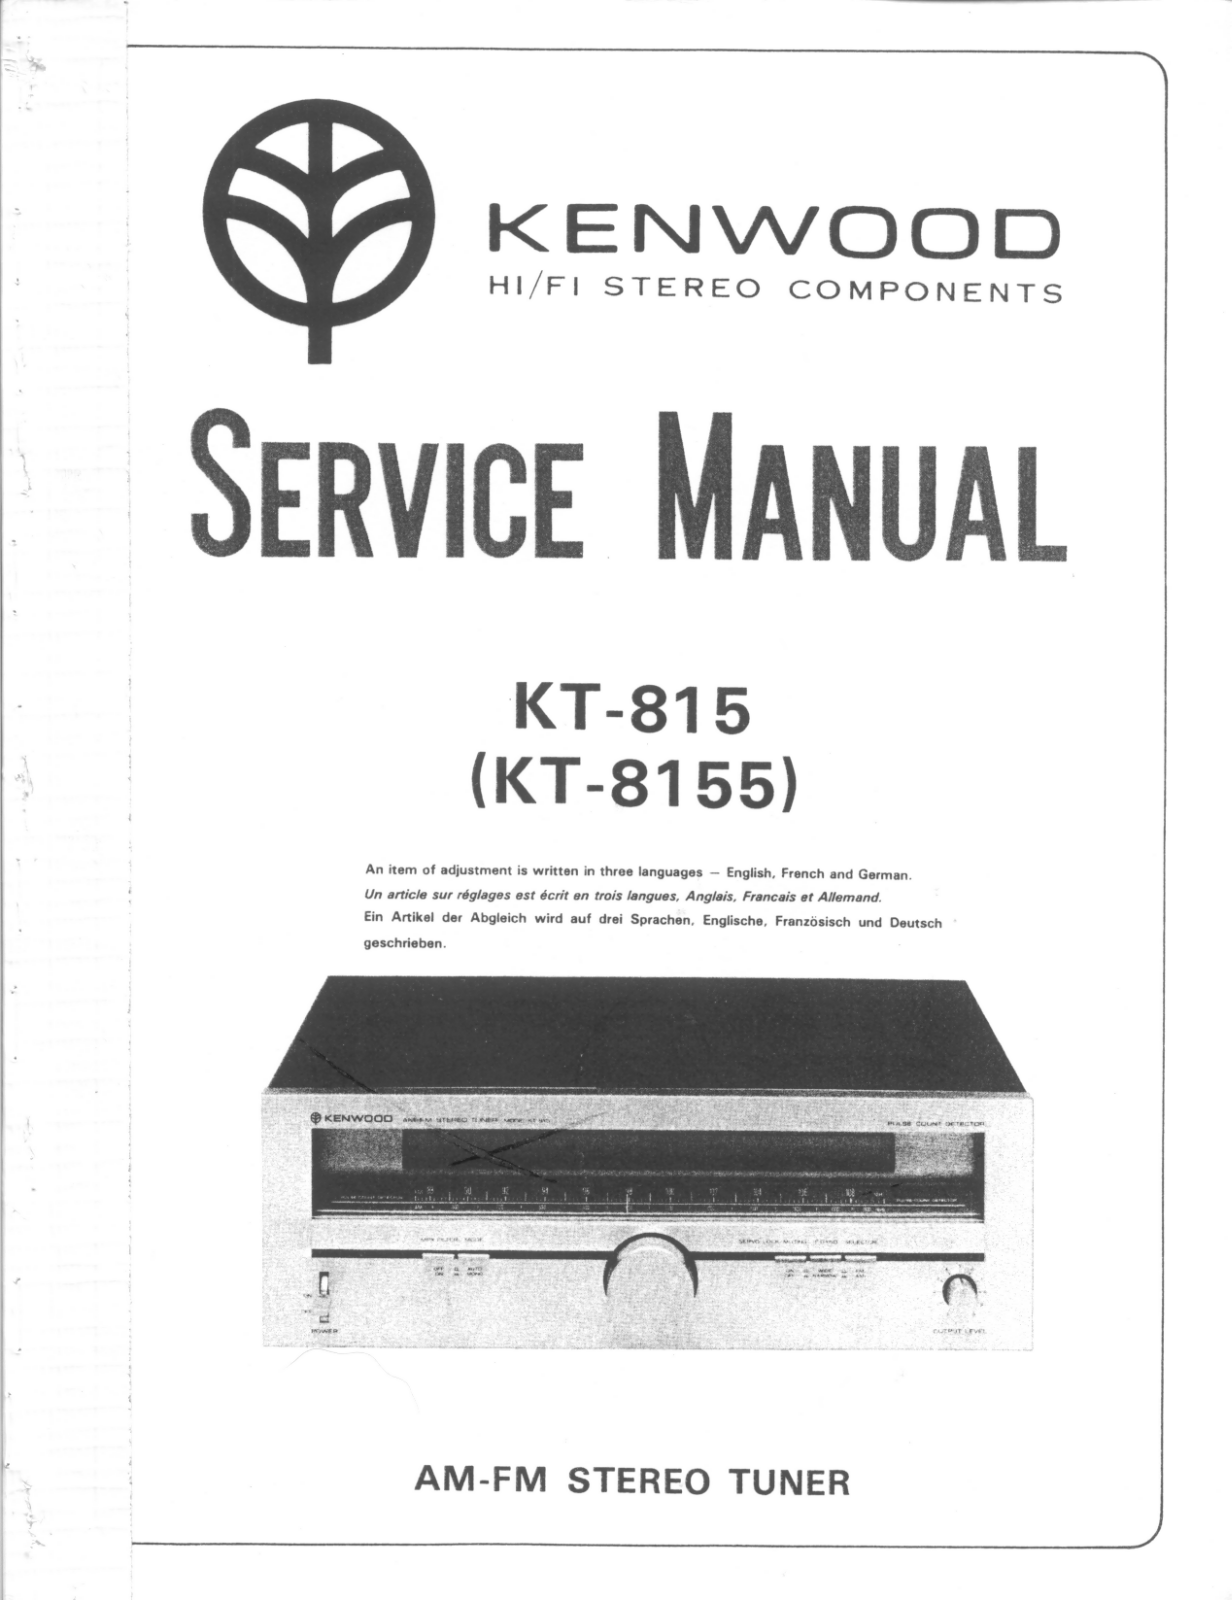 Kenwood KT-8155, KT-815 Service Manual